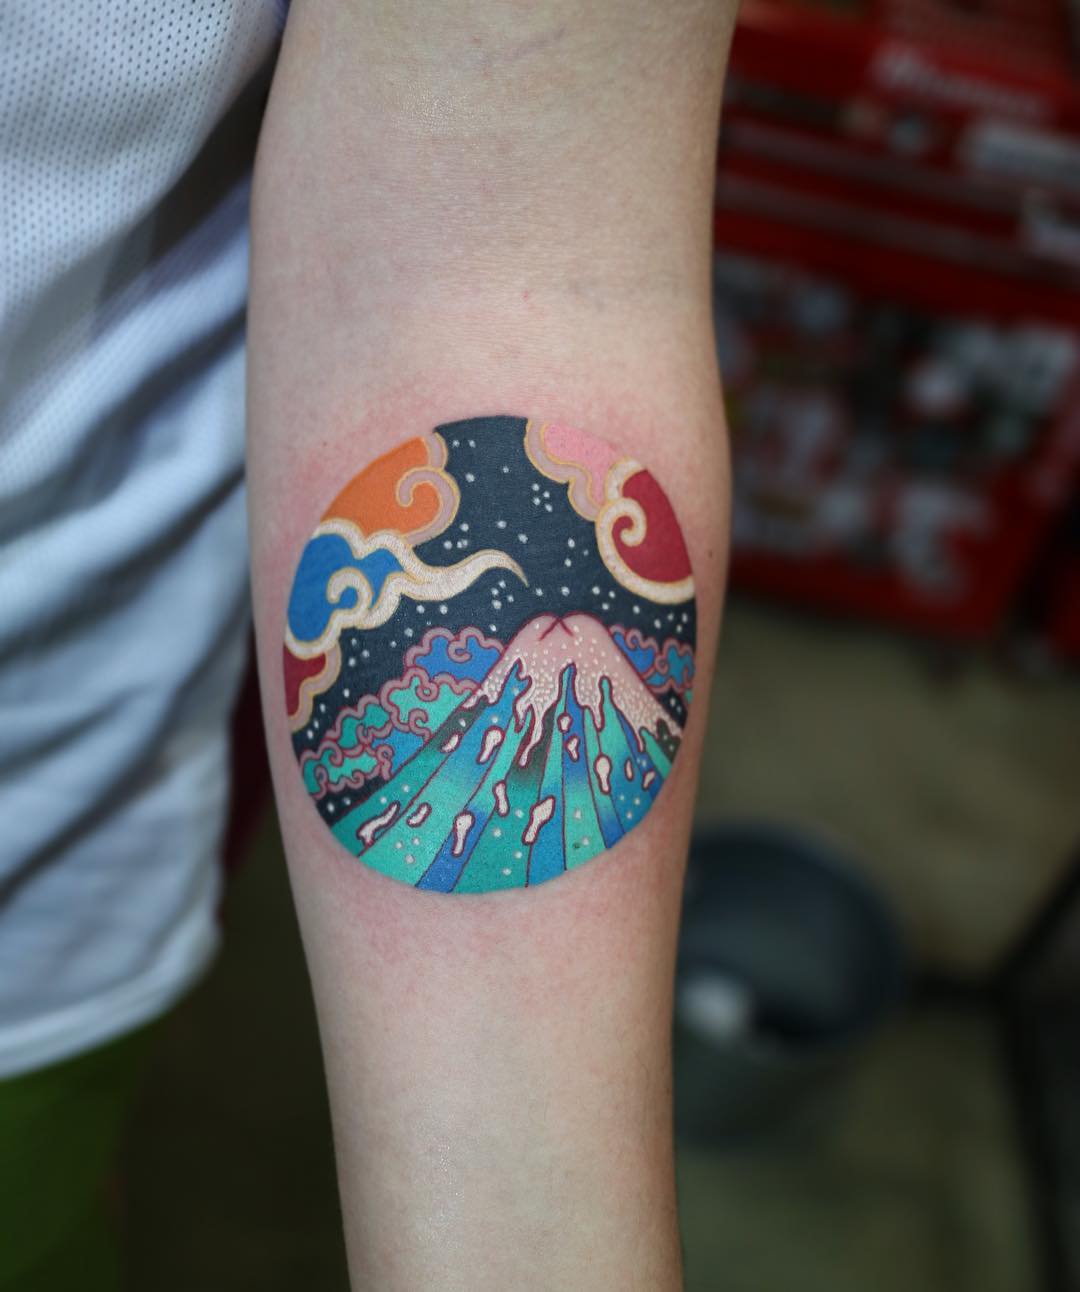 Mount Fuji tattoo by @pitta_kkm